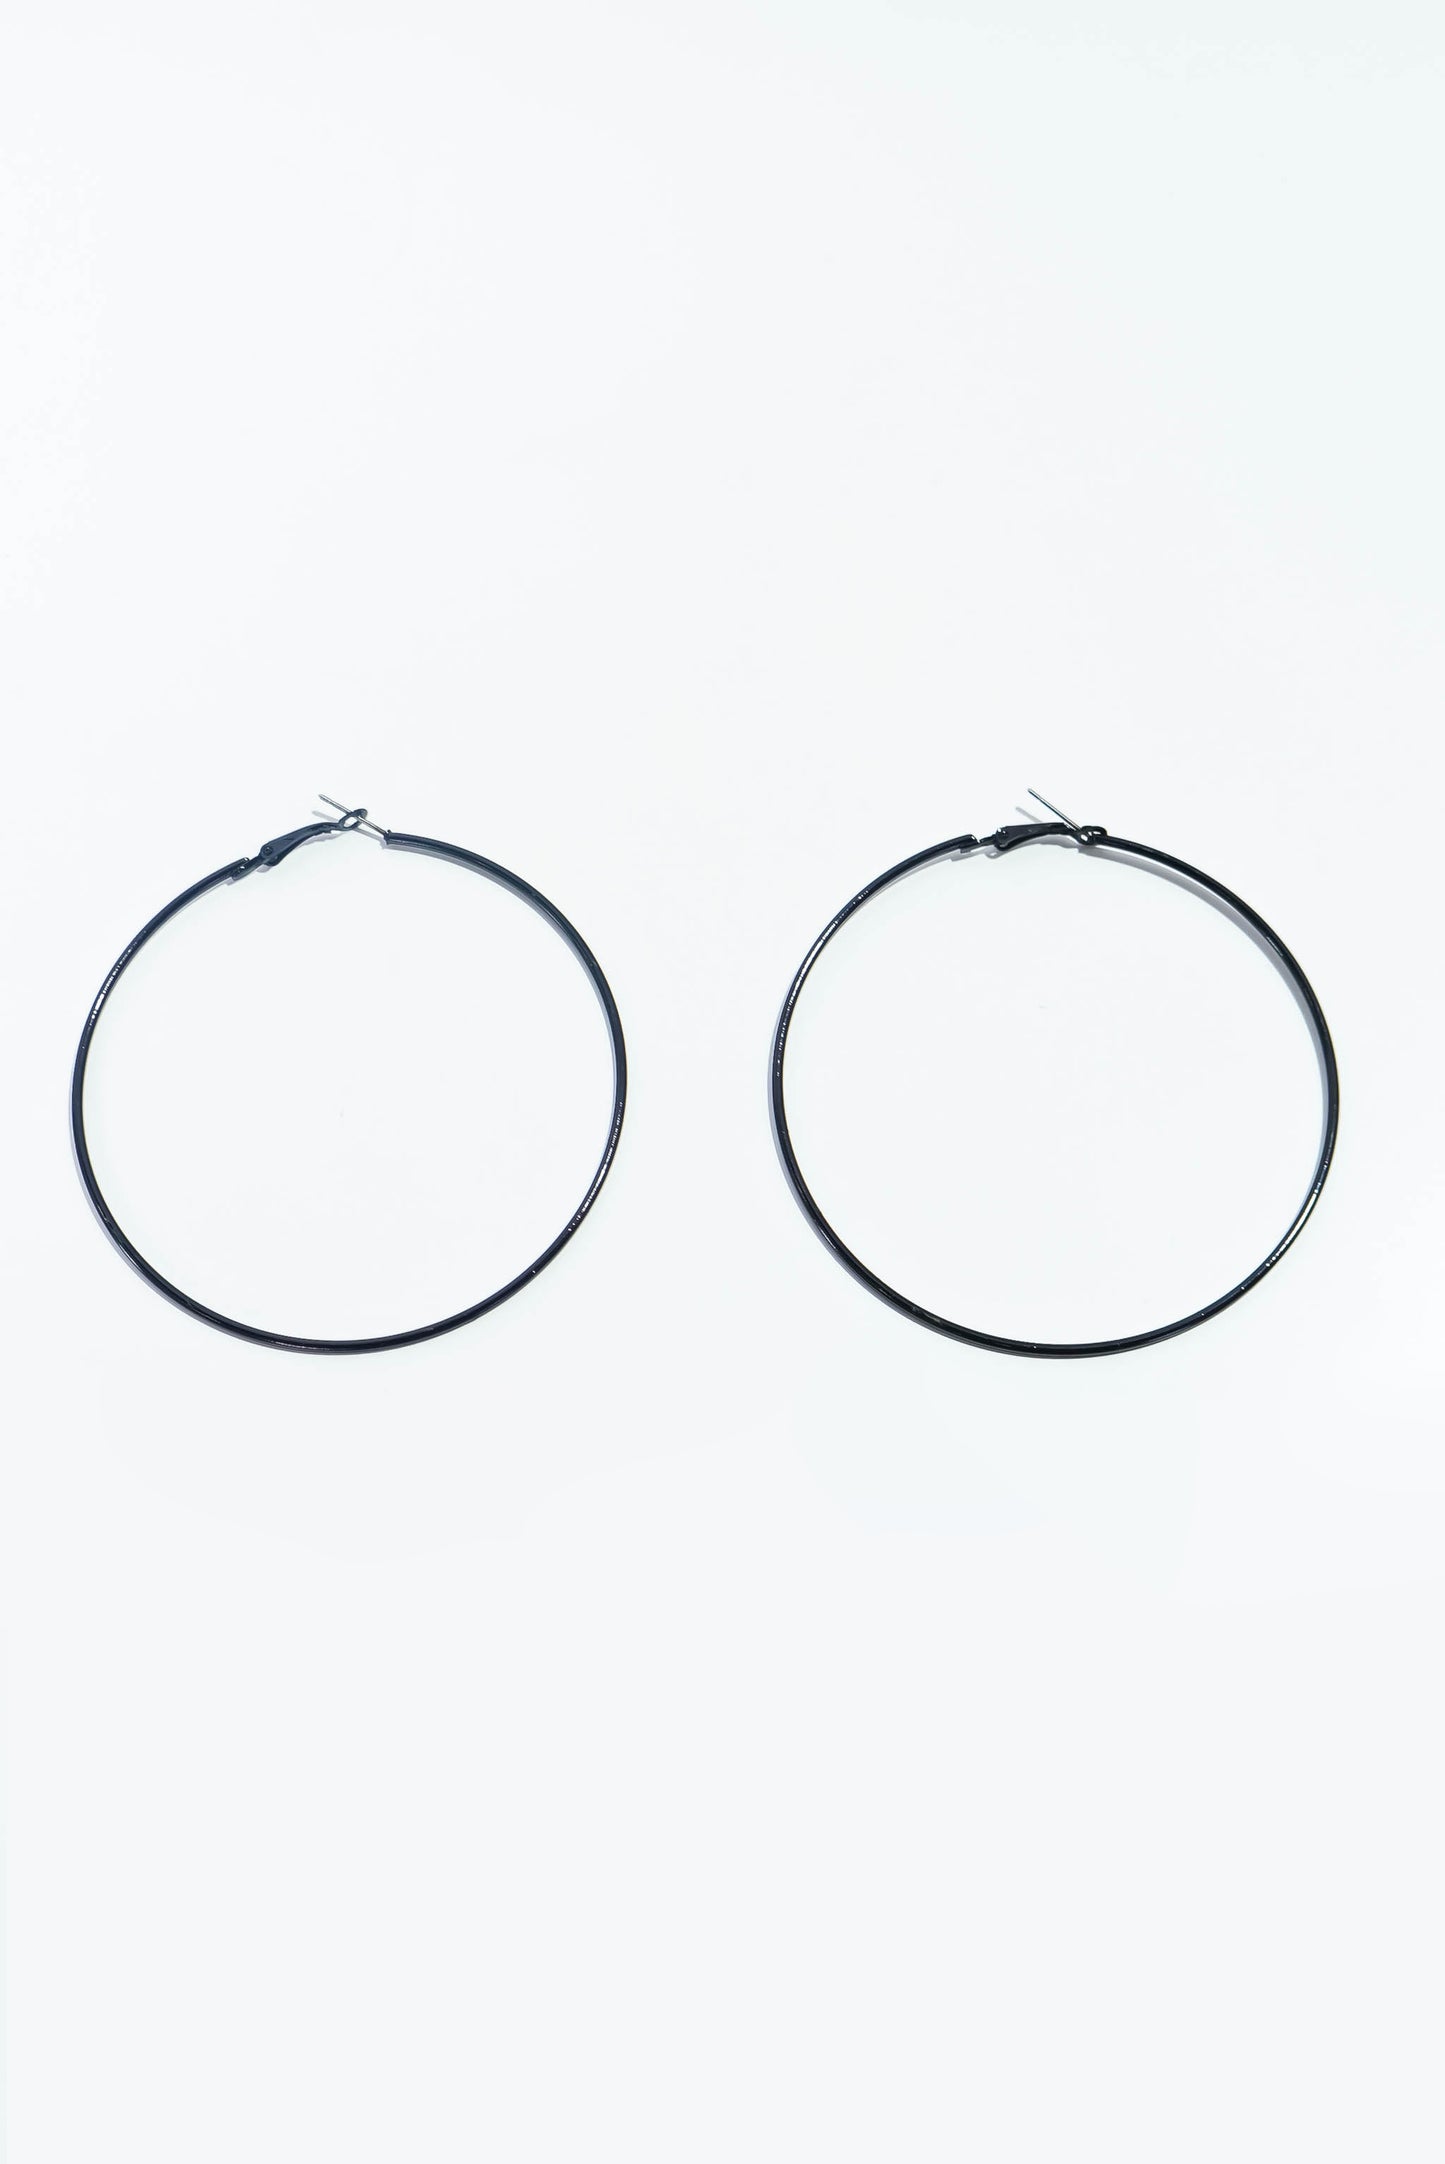 Simplicity Earrings - Black